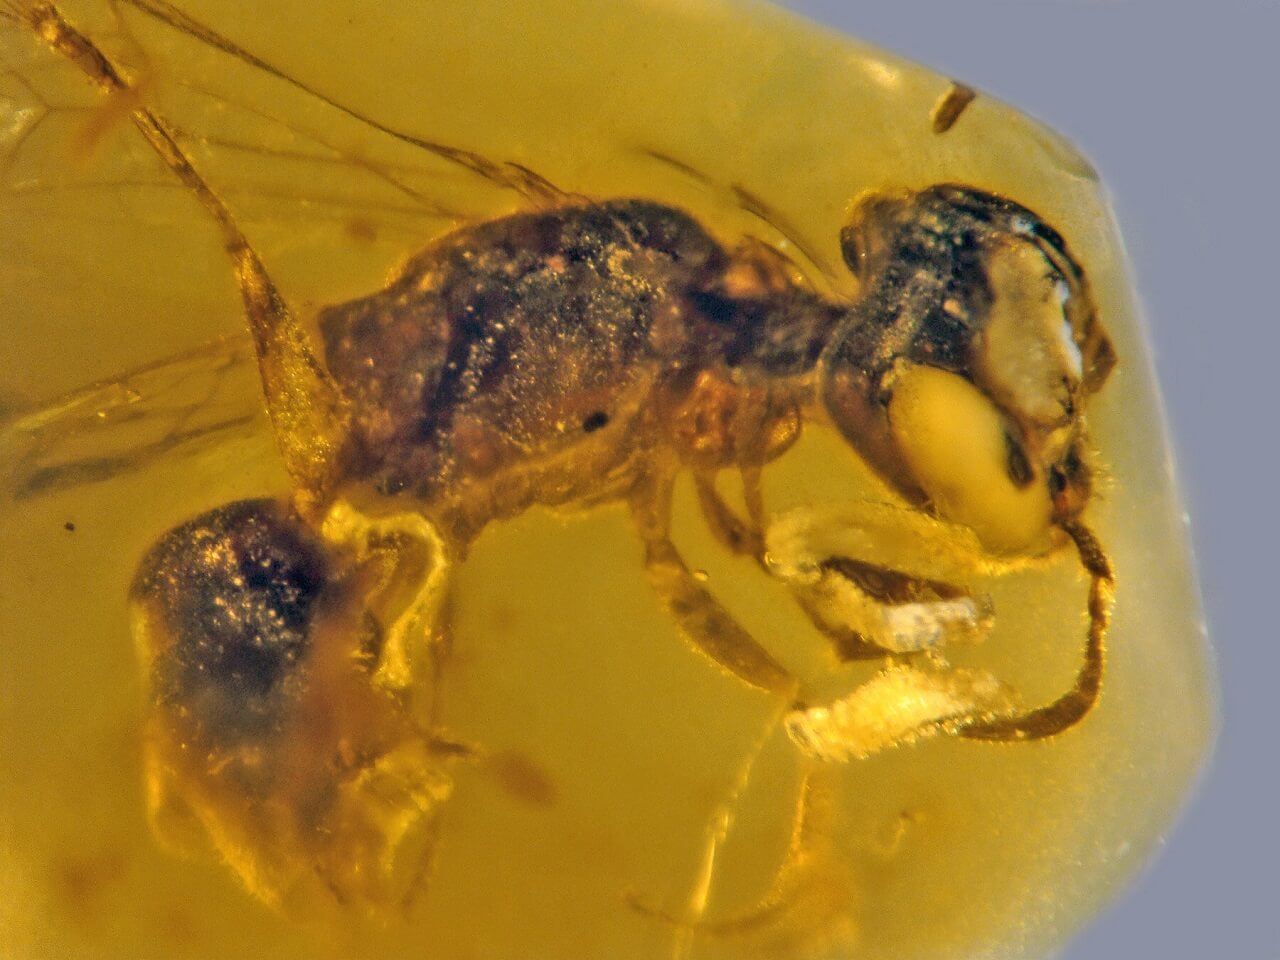 აღმოჩენილია ქარვაში 100 მლნ წლის წინ განმარხებული ფუტკარი, რომელსაც პარაზიტები და ყვავილის მტვერი აქვს მიკრული